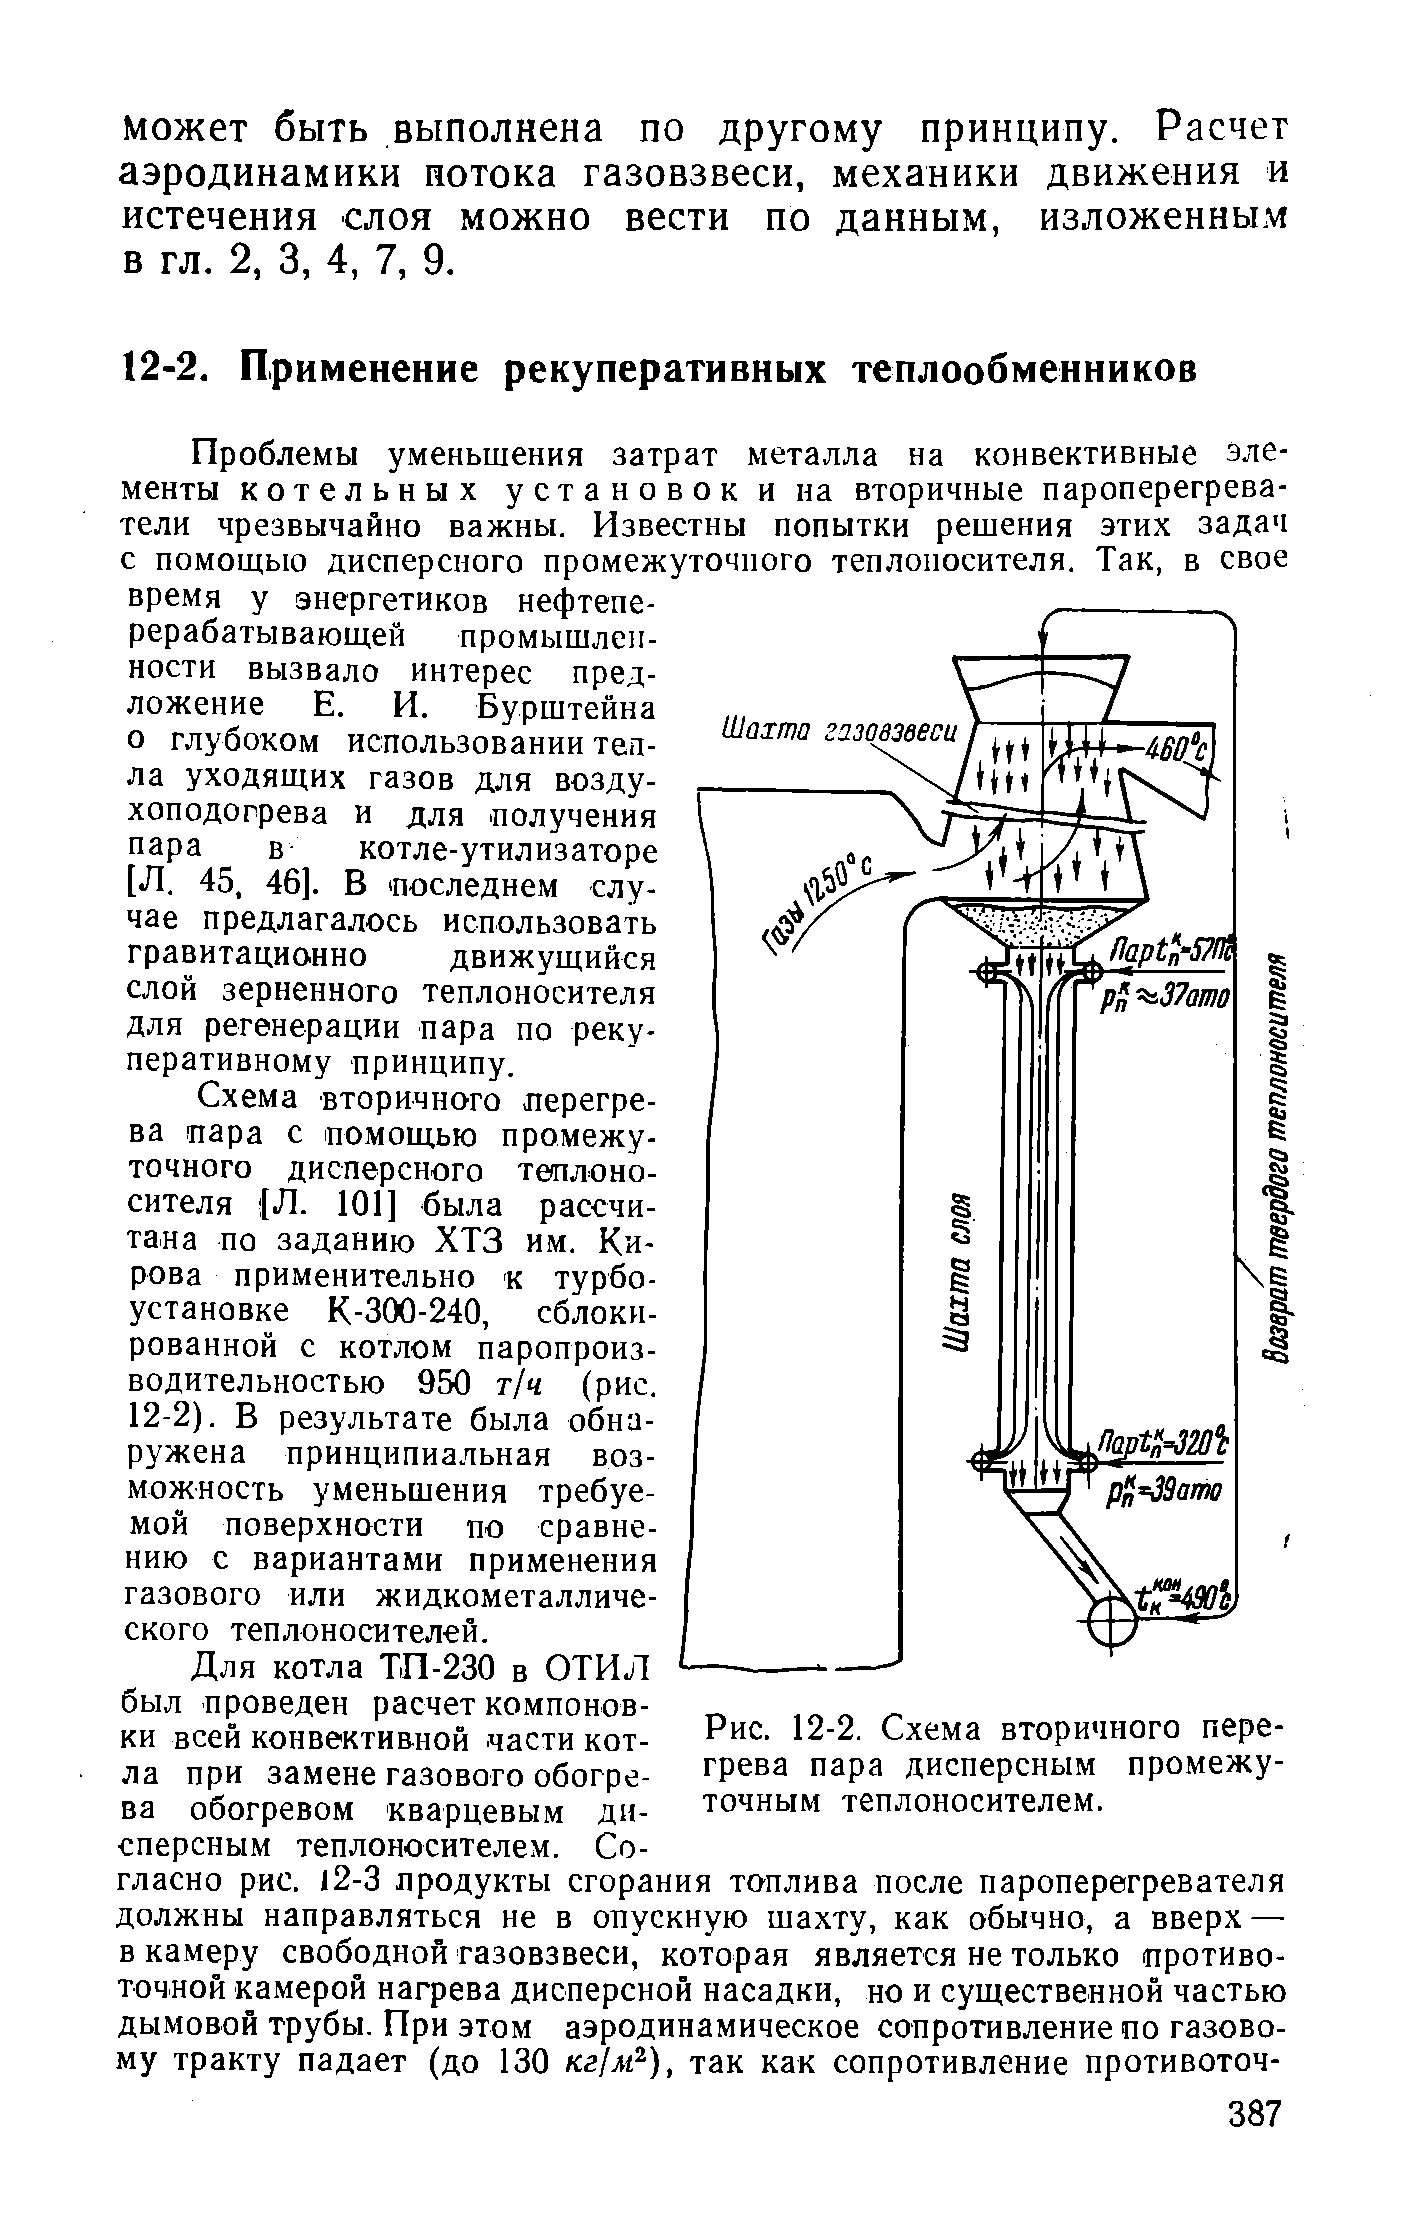 Рис. 12-2. Схема вторичного перегрева пара дисперсным промежуточным теплоносителем.
